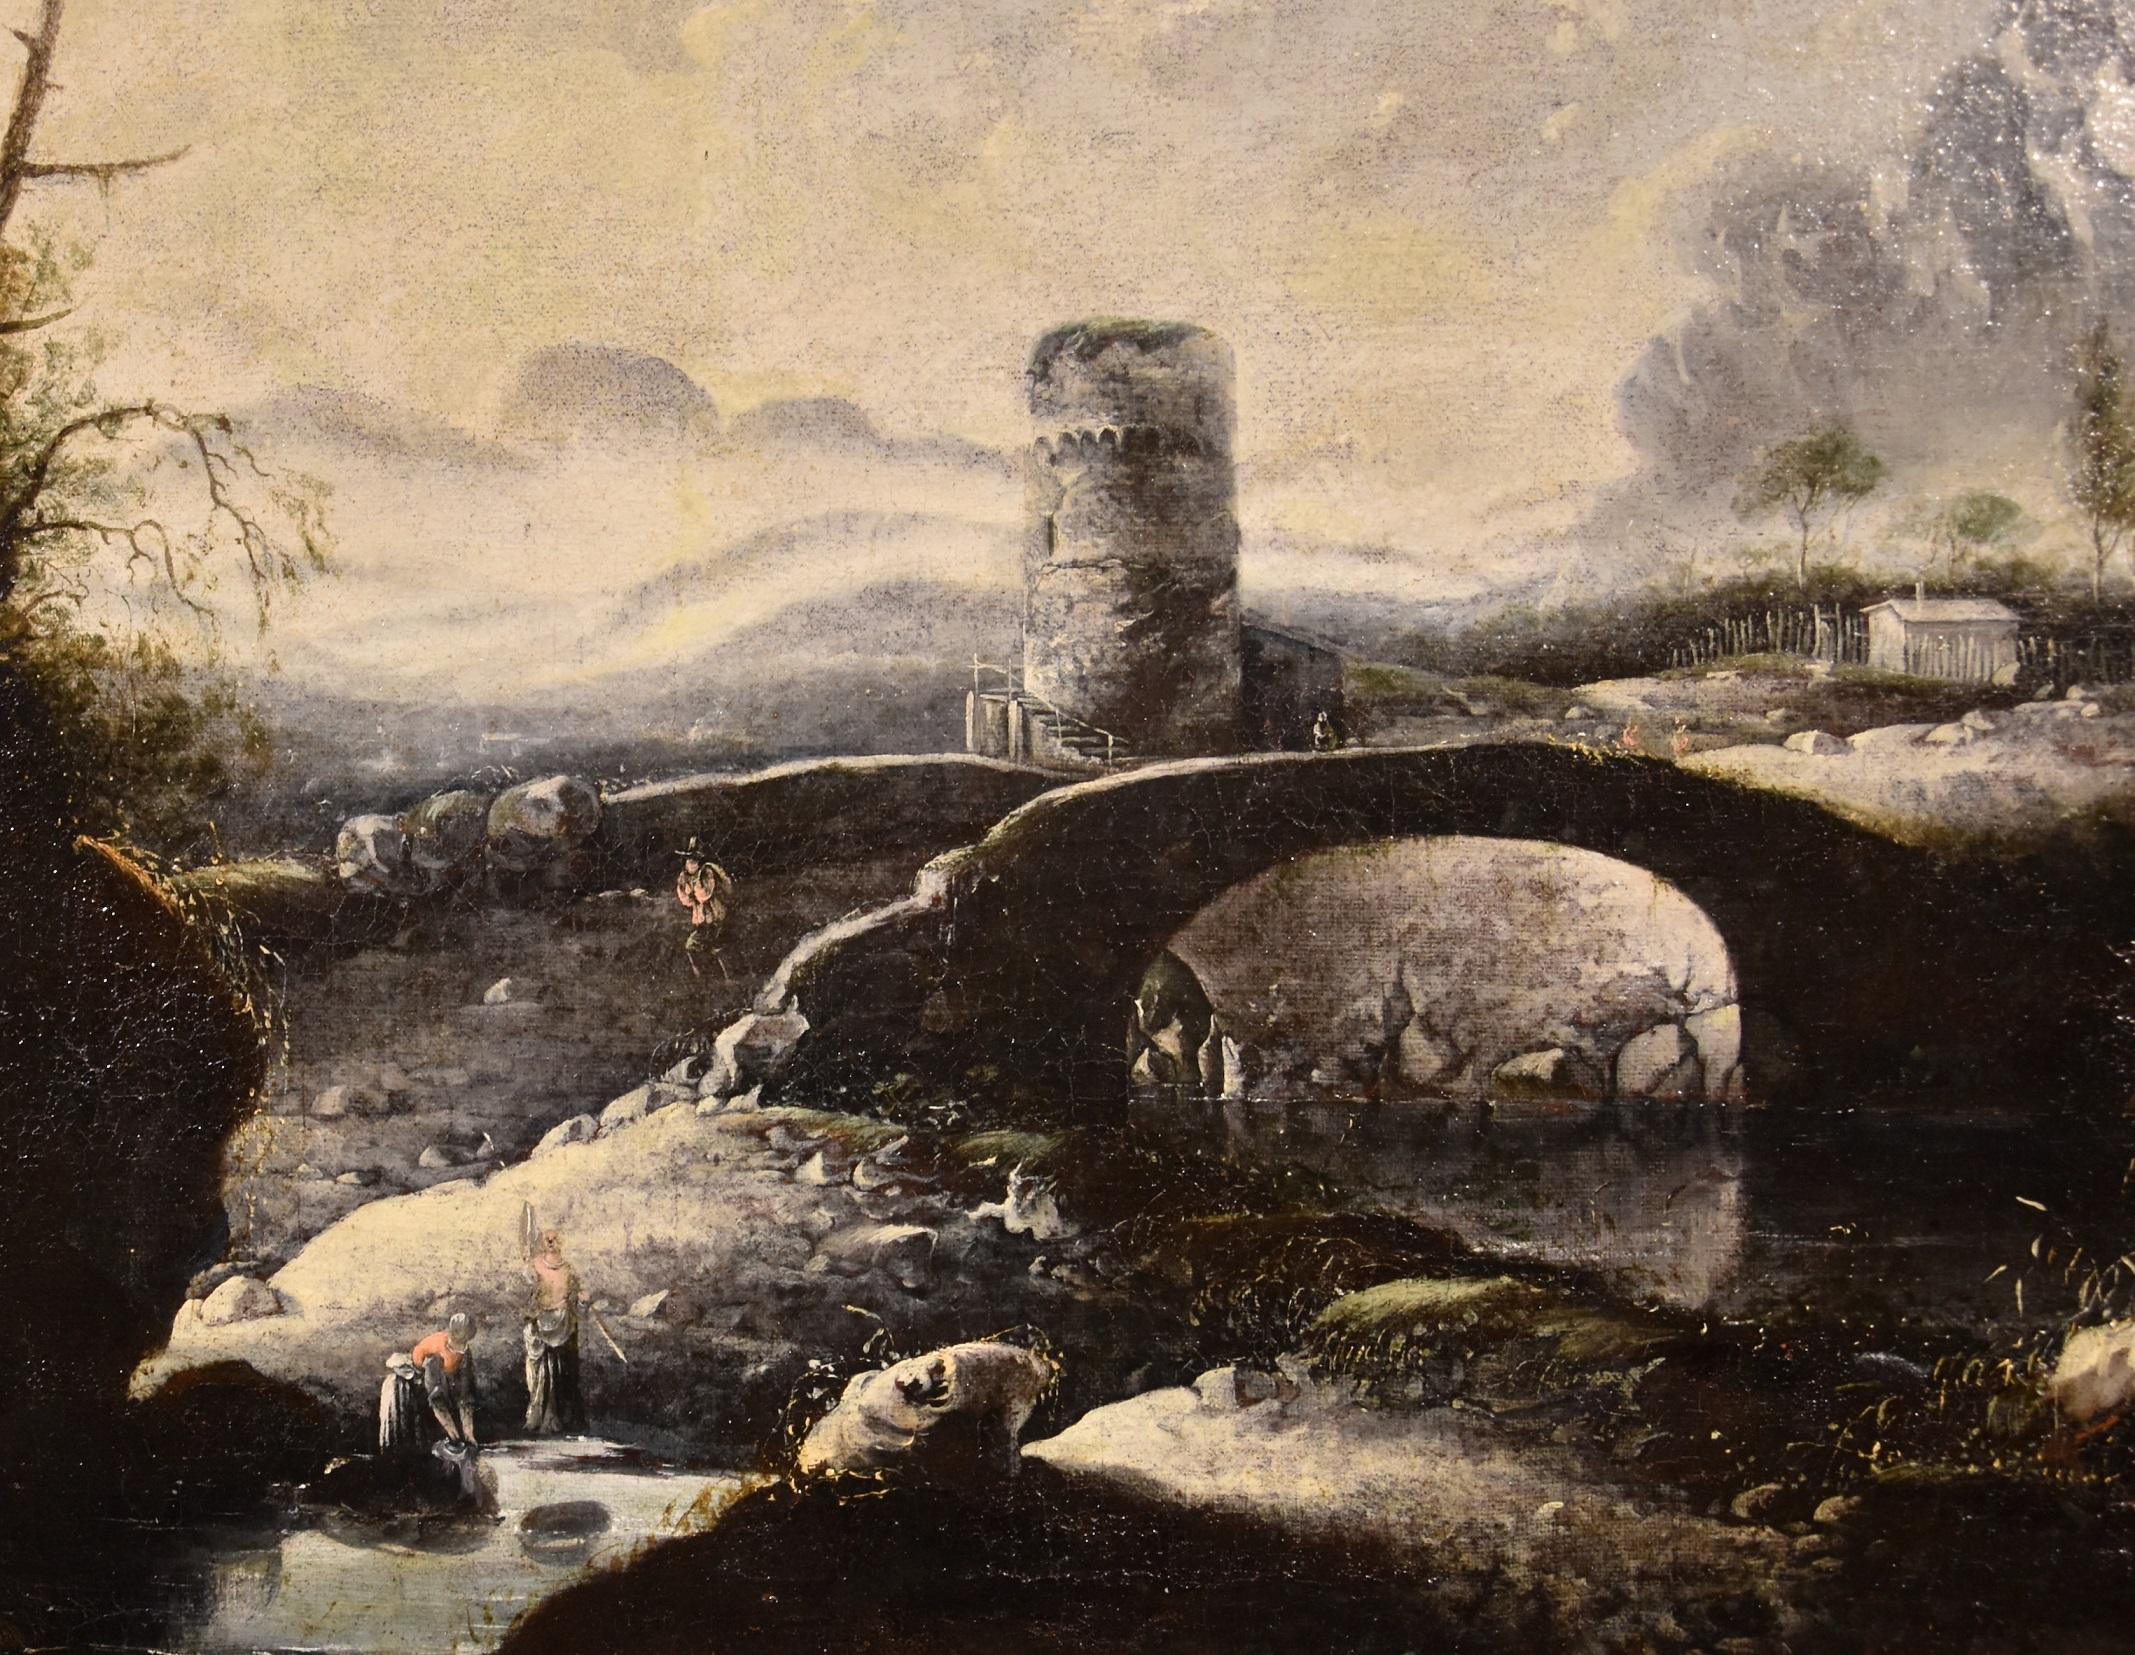 Winter Landscape De Jode Paint Oil on canvas Old master 17th Century Flemish Art For Sale 1